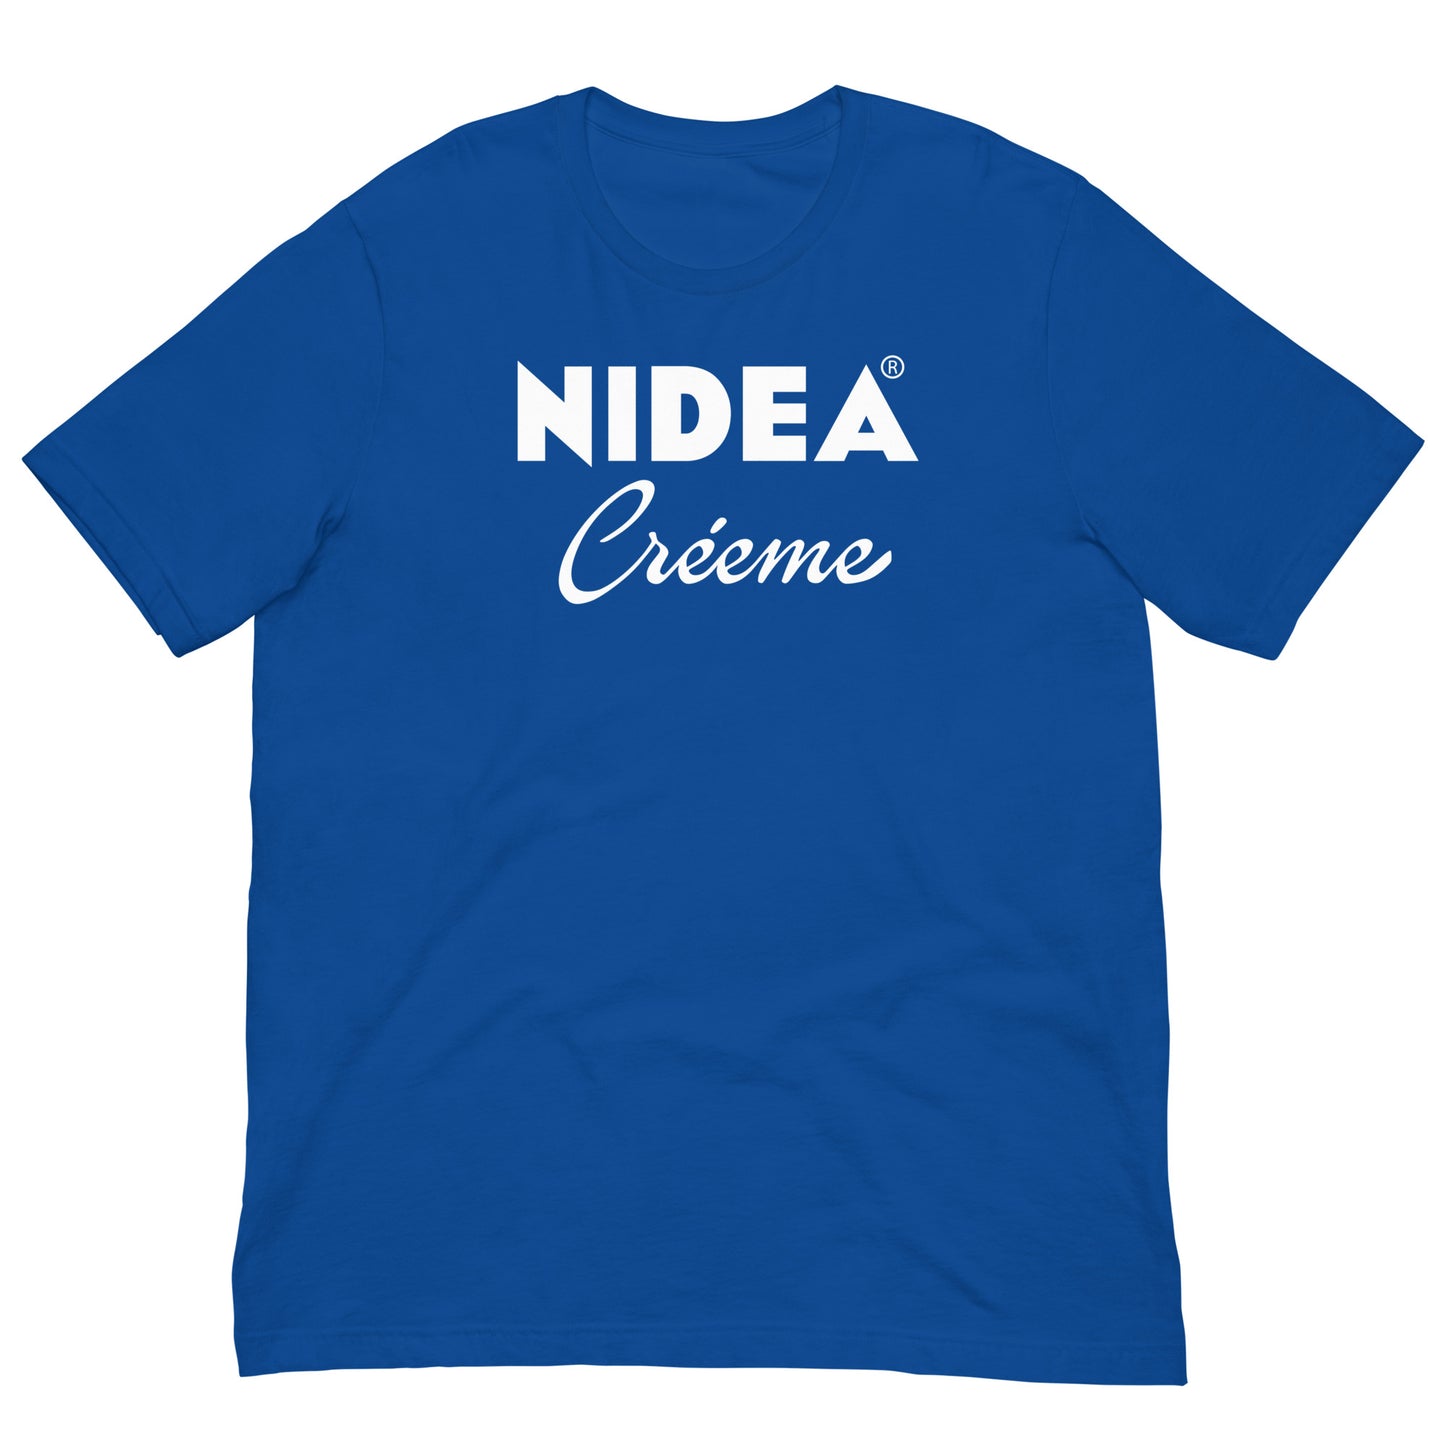 Camiseta Nidea Créeme logo Nivea. Color Azul Royal.